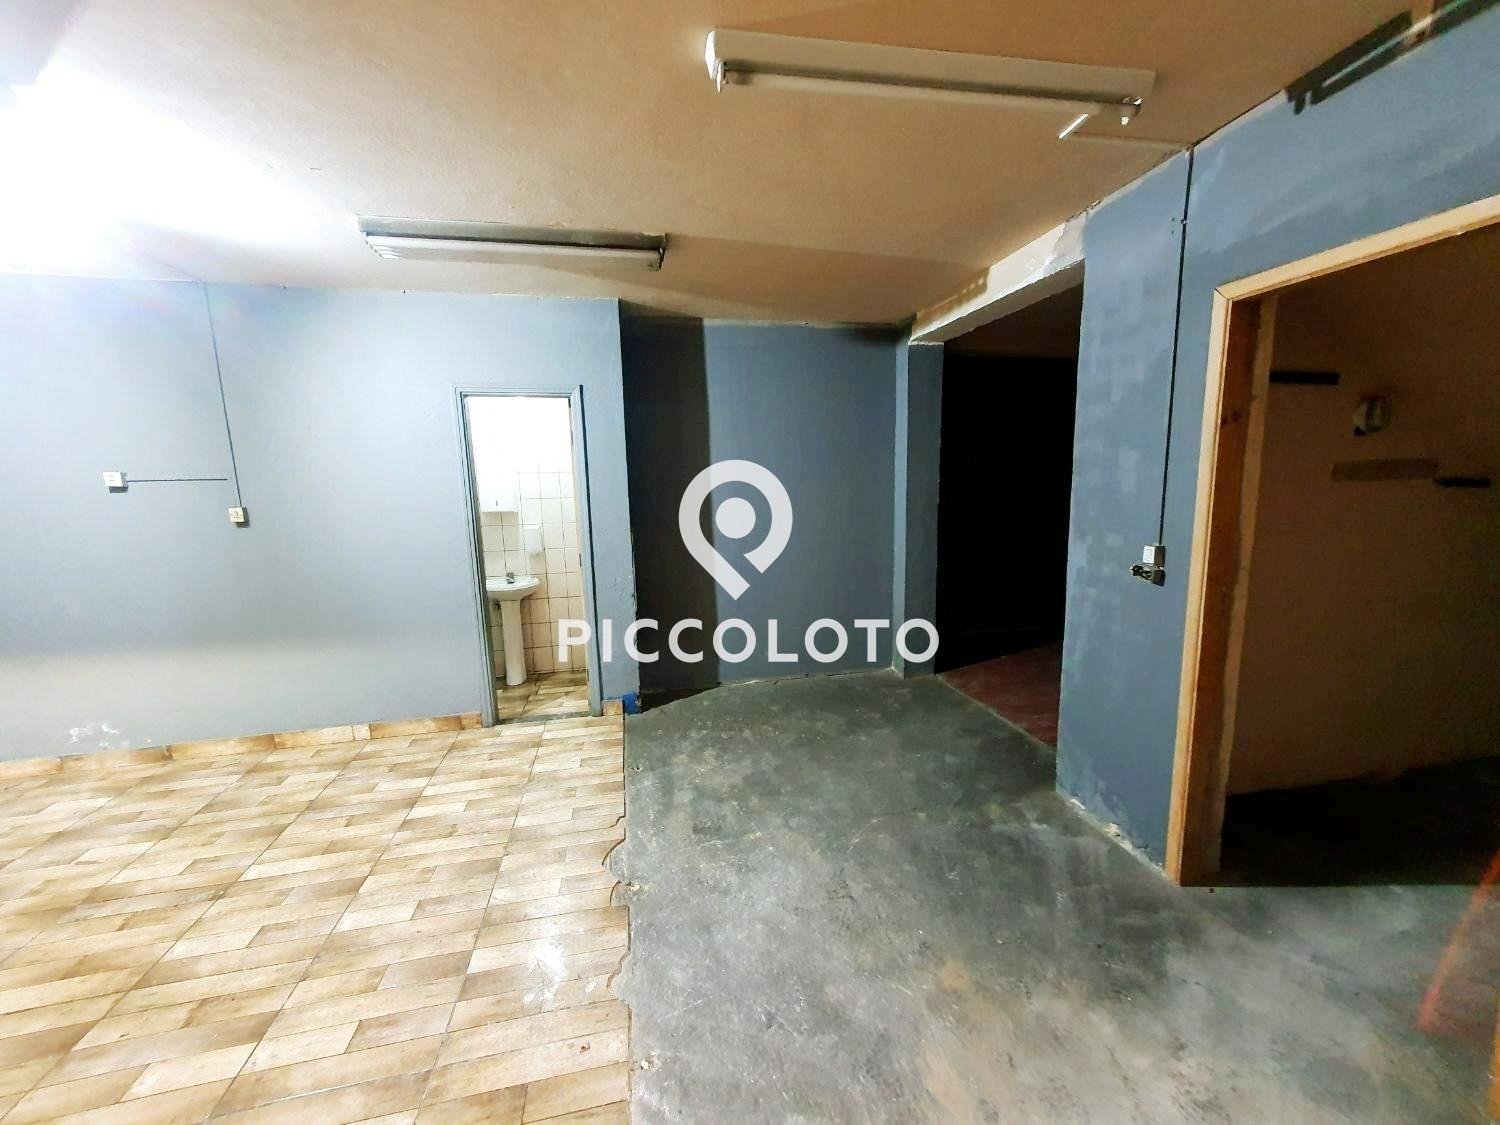 Piccoloto -Galpão para alugar no Vila Industrial em Campinas